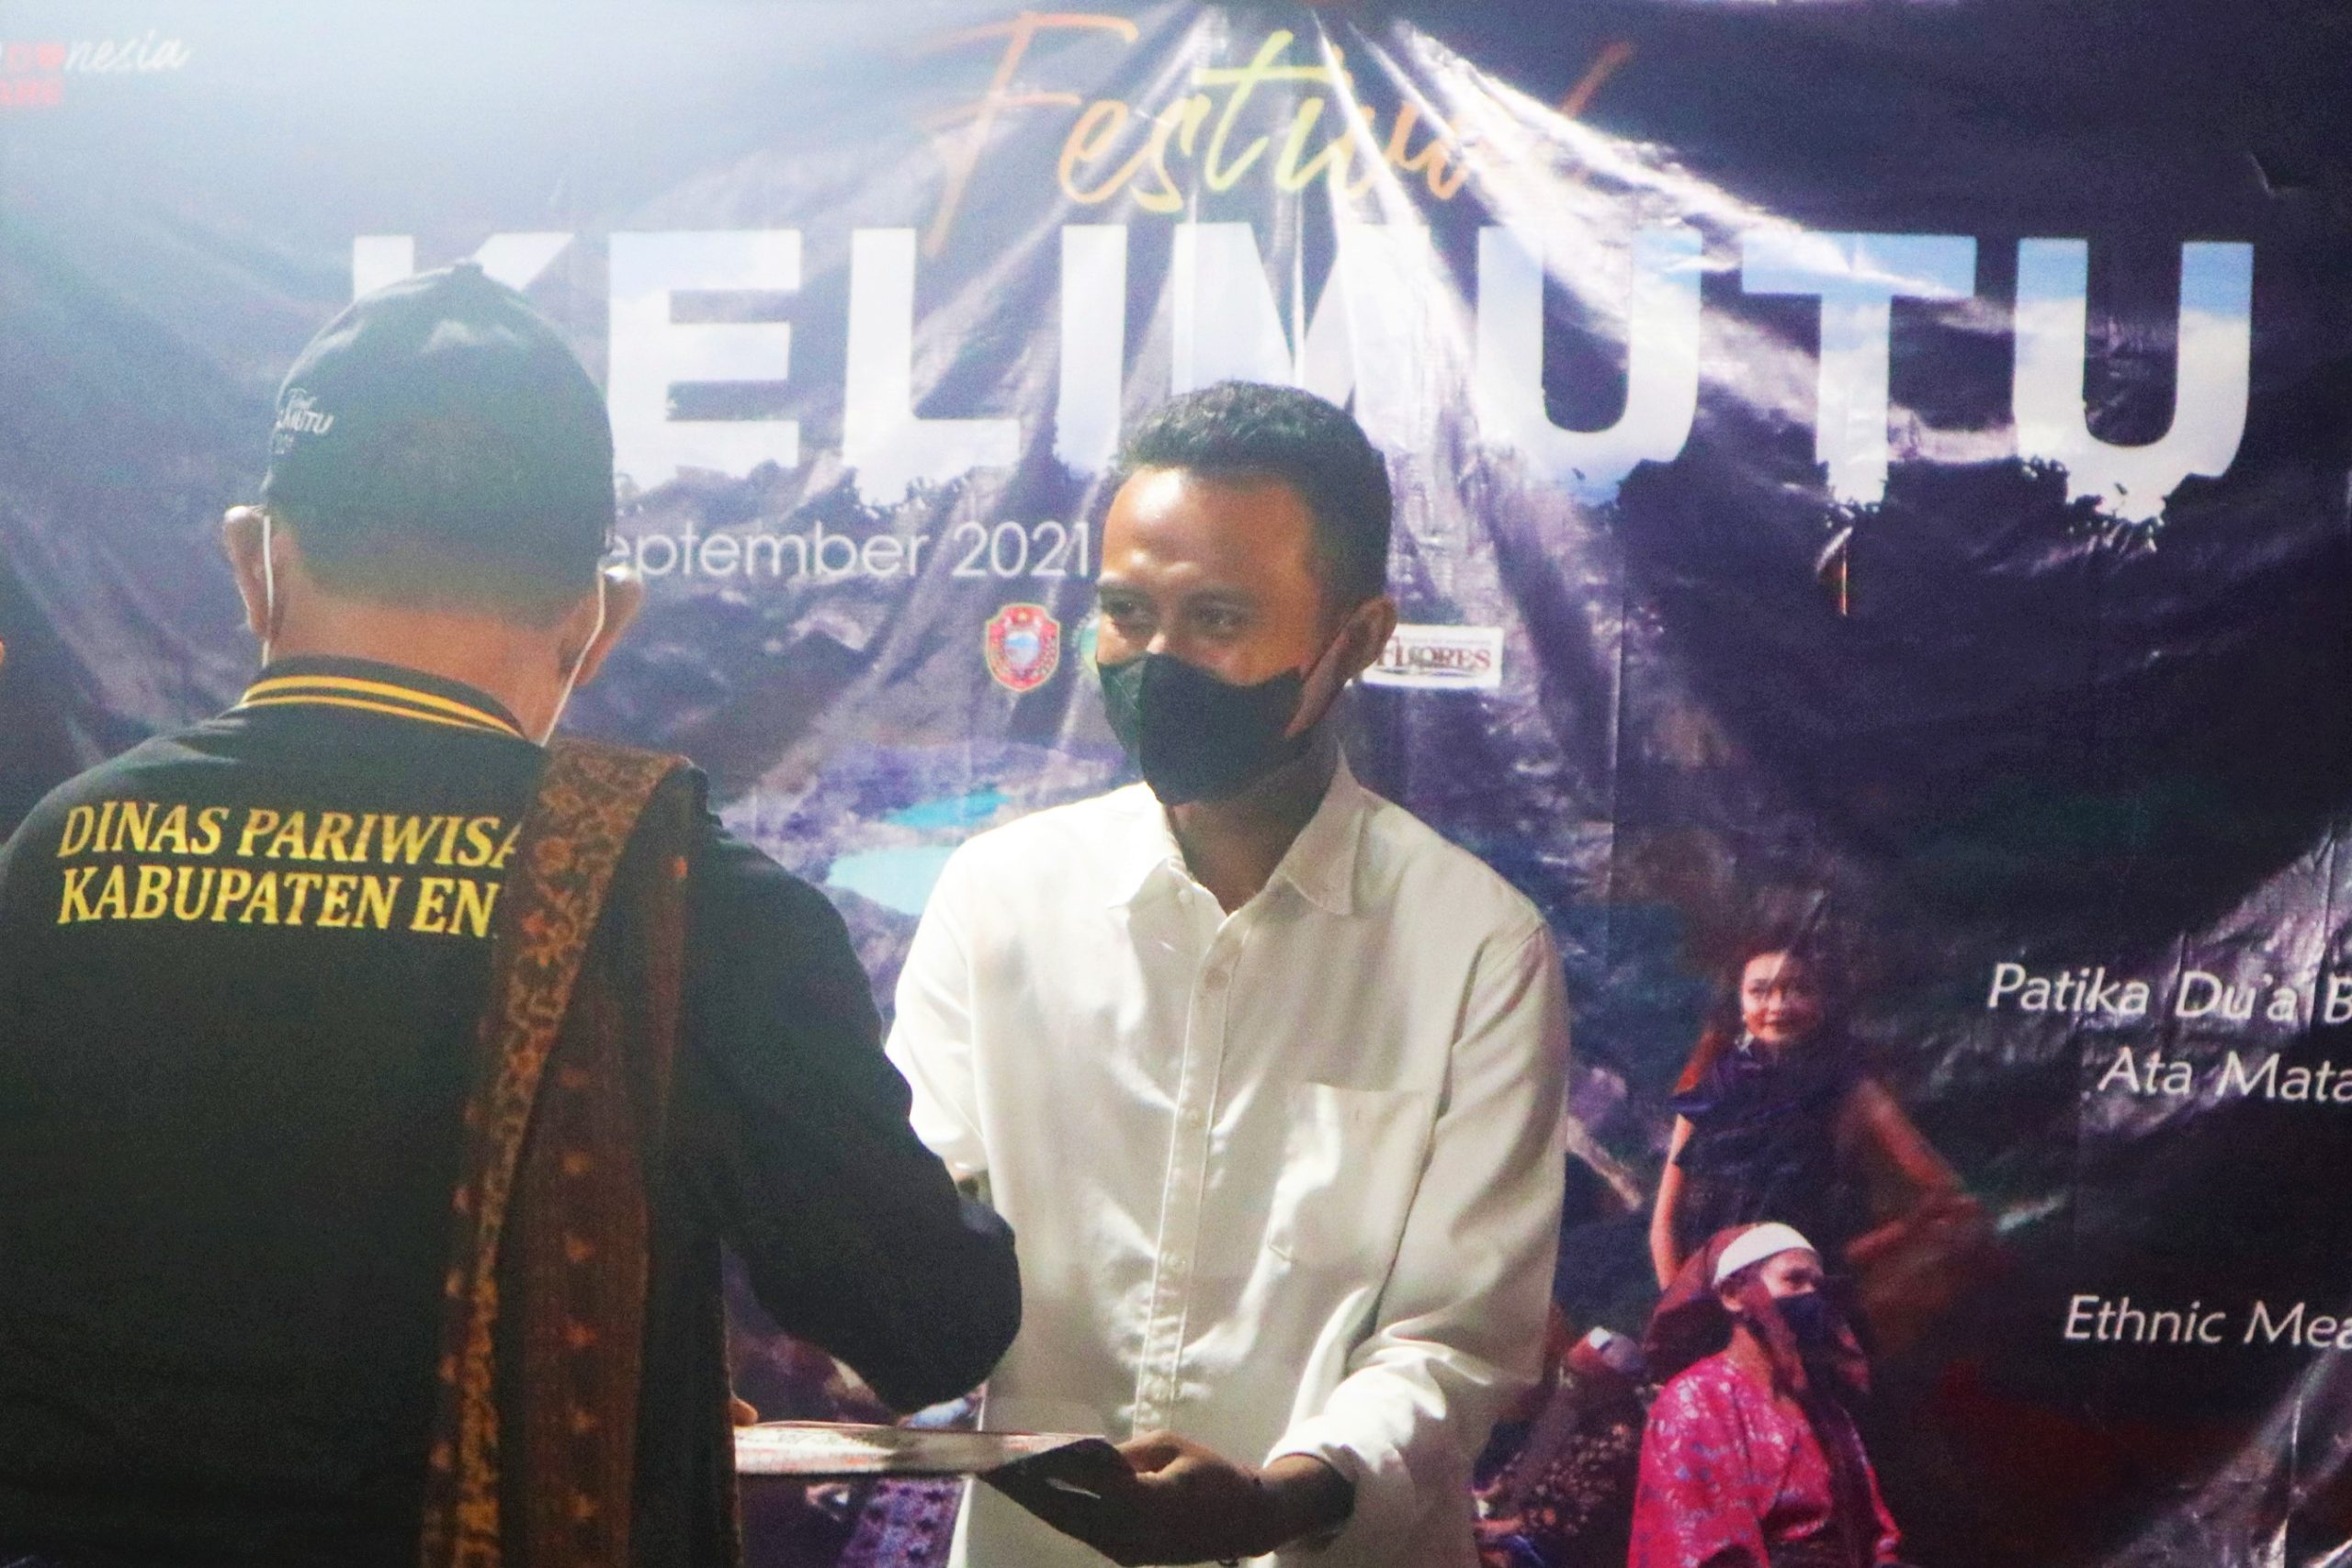 Nadiran Samin menerima hadiah sebagai pemenang lomba konten kreator Festival Kelimutu 2021